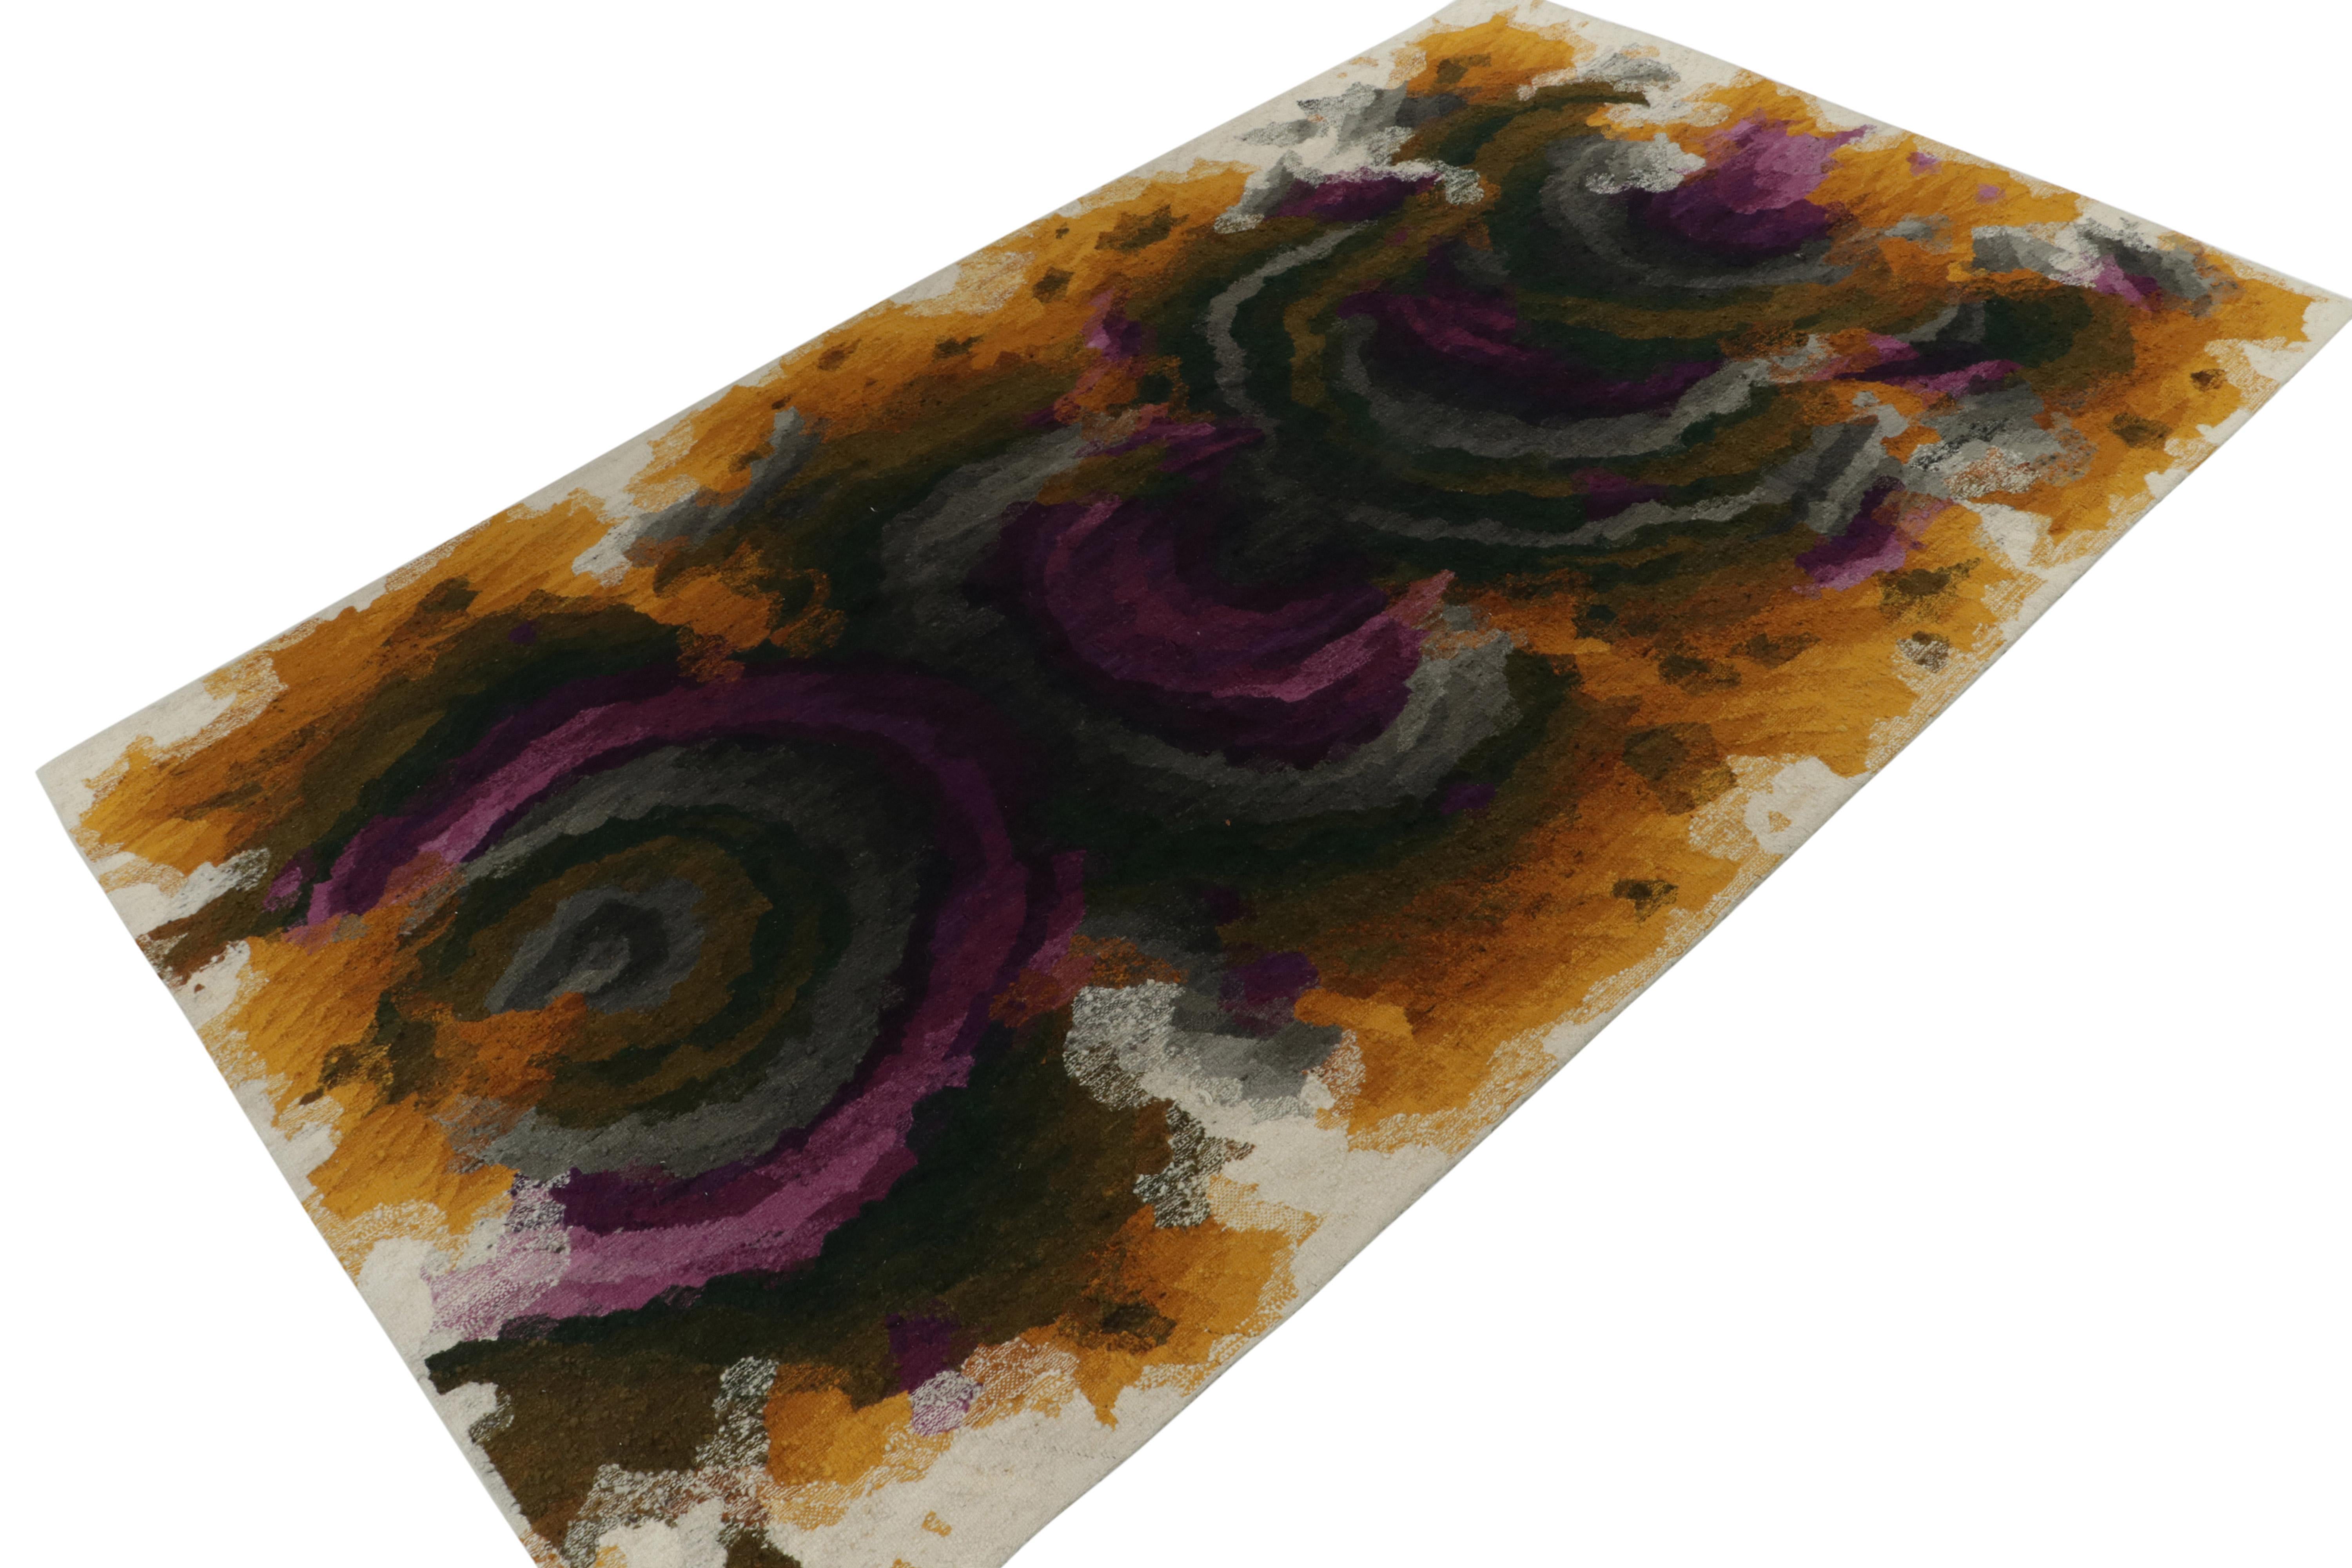 Handgewebter Wollteppich um 1950-1960, ein fabelhafter abstrakter Teppich im Format 9x15, der aus einer bedeutenden schwedischen Sammlung stammt.  

Über das Design: Die Farbgebung ist ein Spiel aus Ocker-, Violett- und Grautönen mit einer